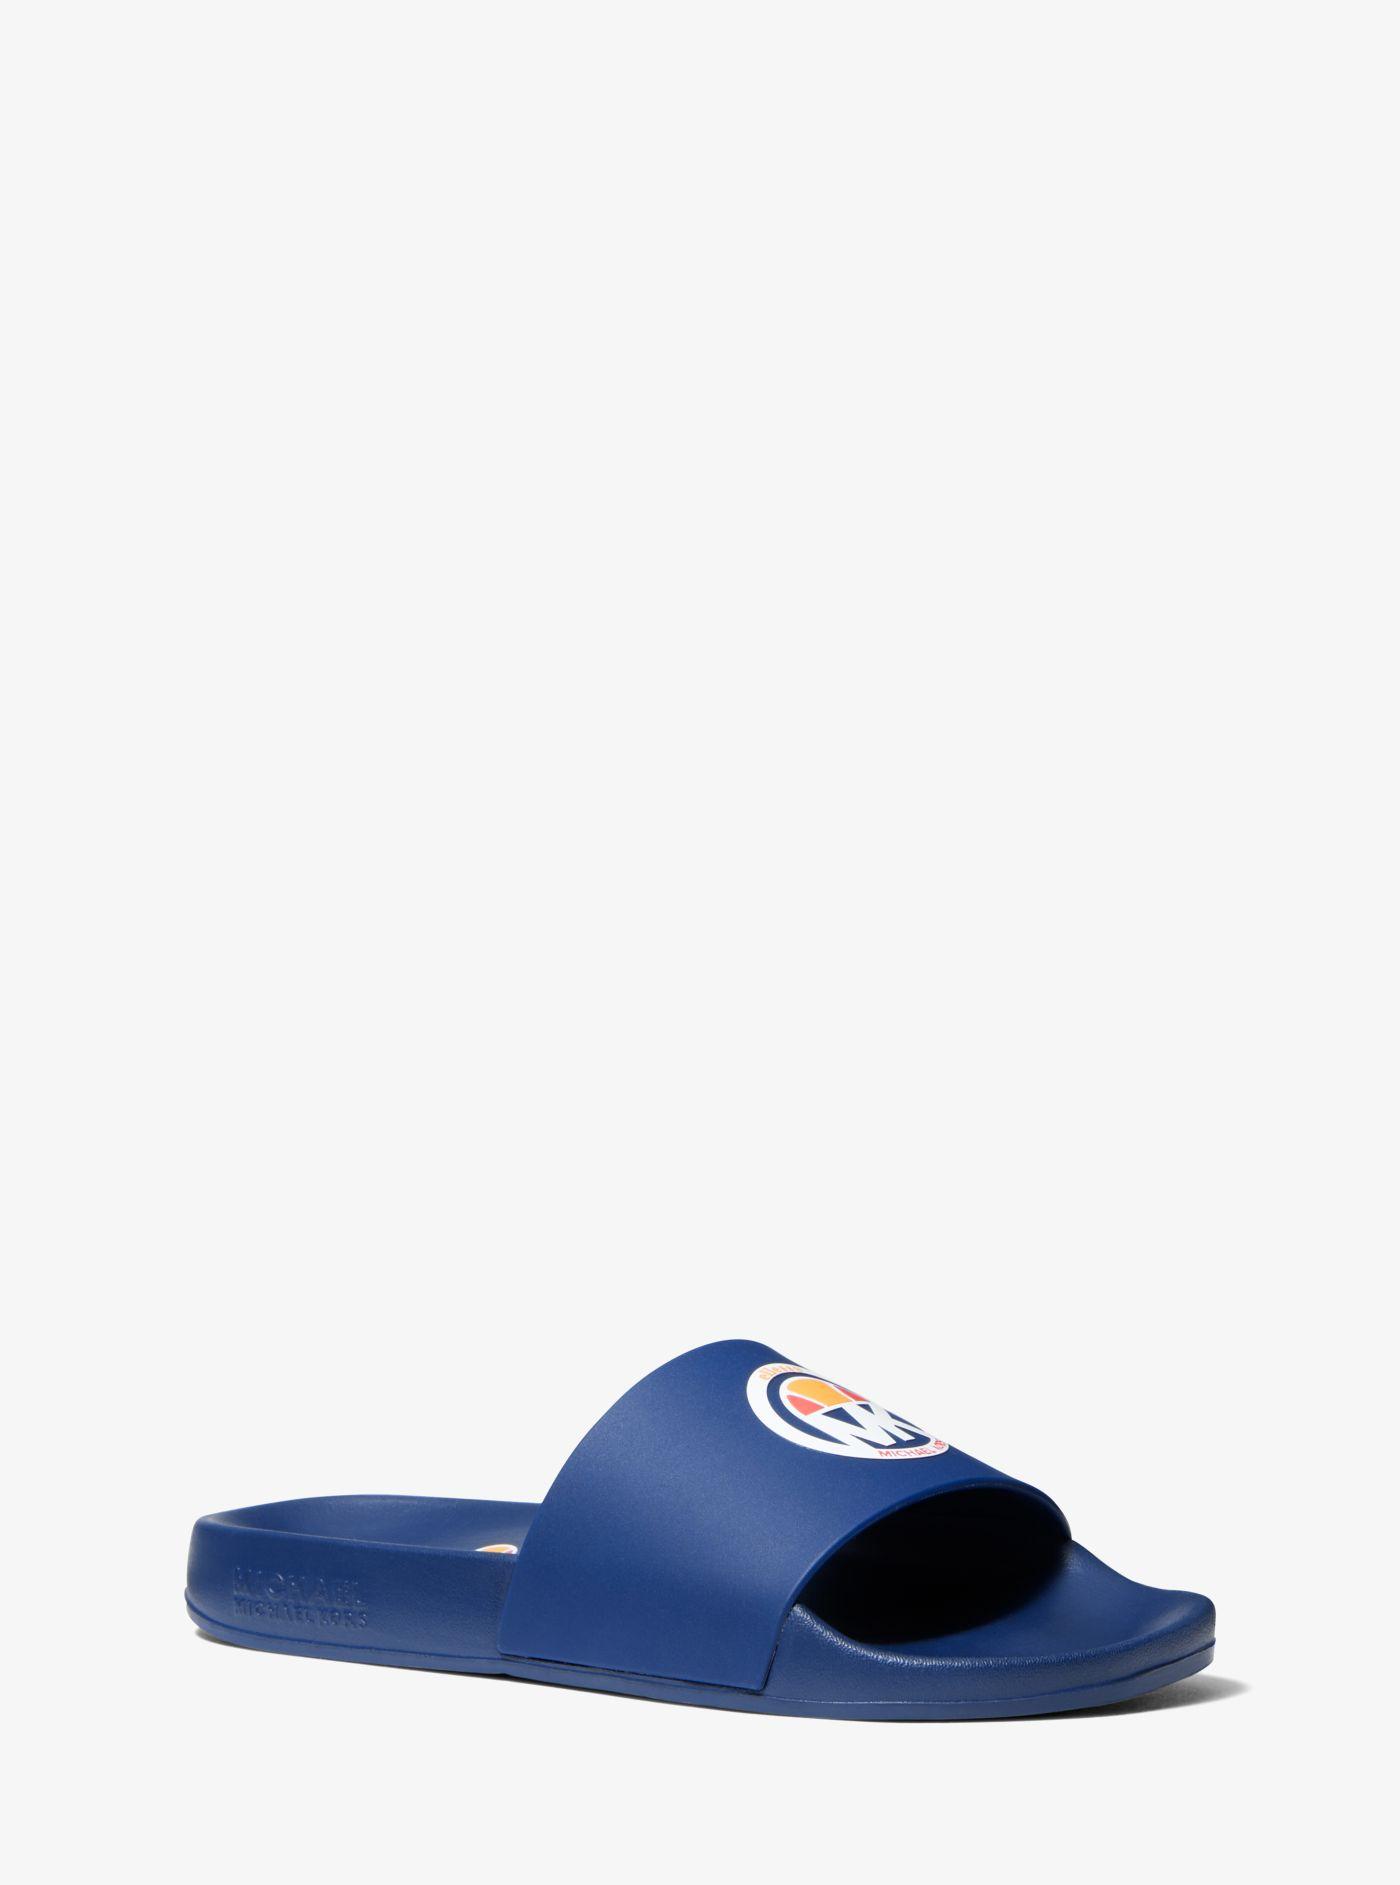 Michael Kors Mk X Ellesse Gilmore Rubber Slide Sandal in Blue | Lyst